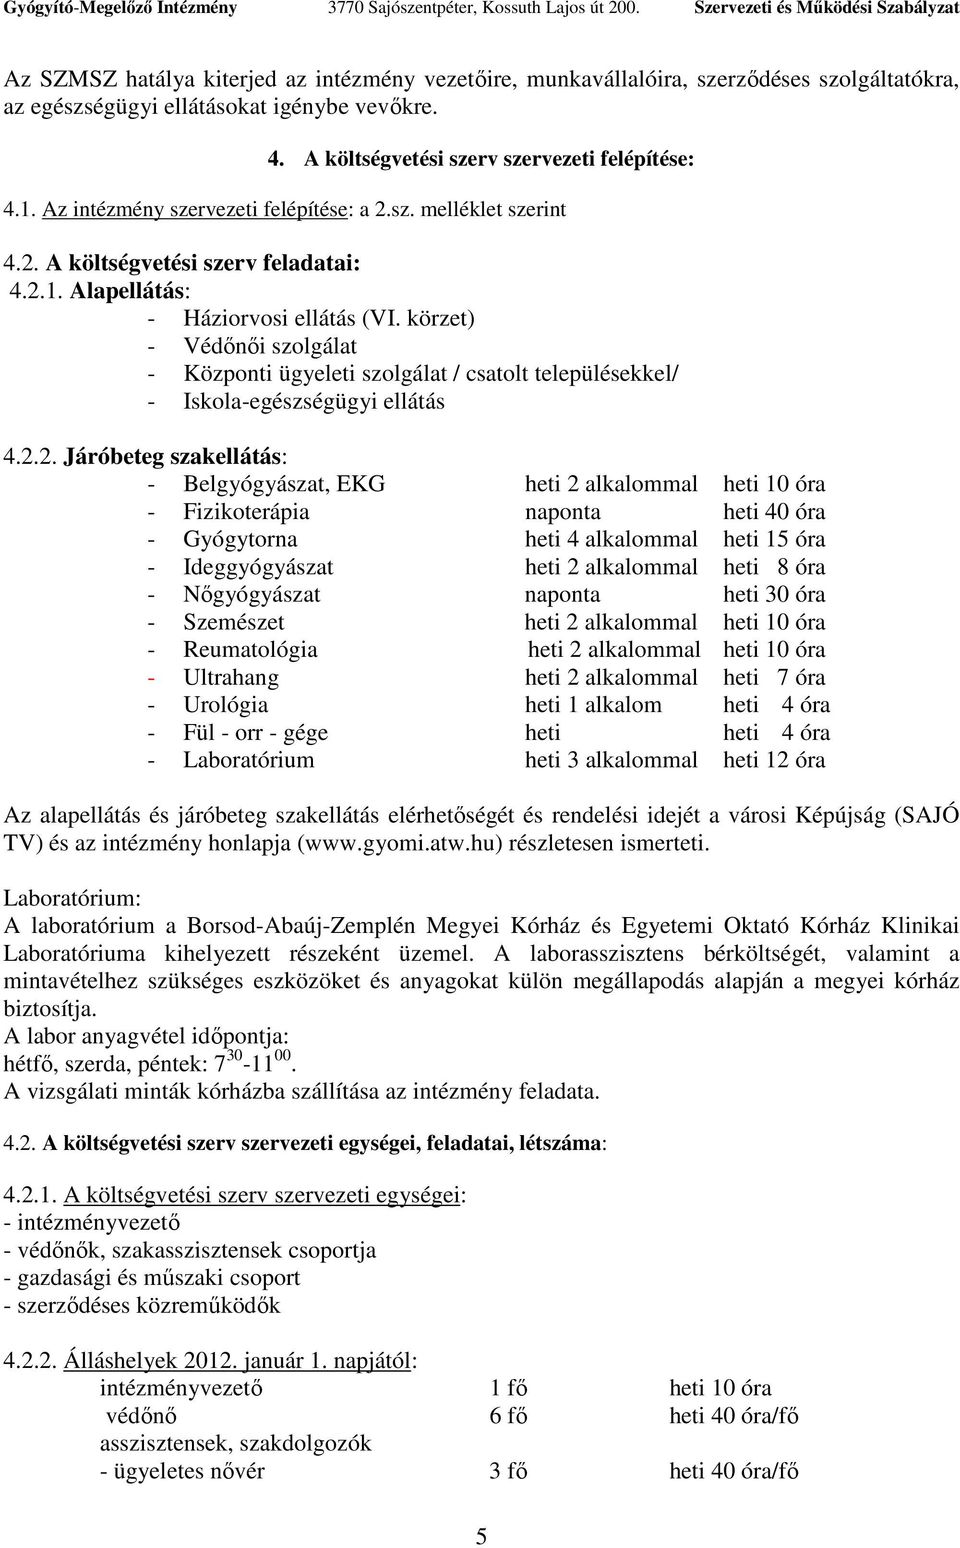 körzet) - Védınıi szolgálat - Központi ügyeleti szolgálat / csatolt településekkel/ - Iskola-egészségügyi ellátás 4.2.